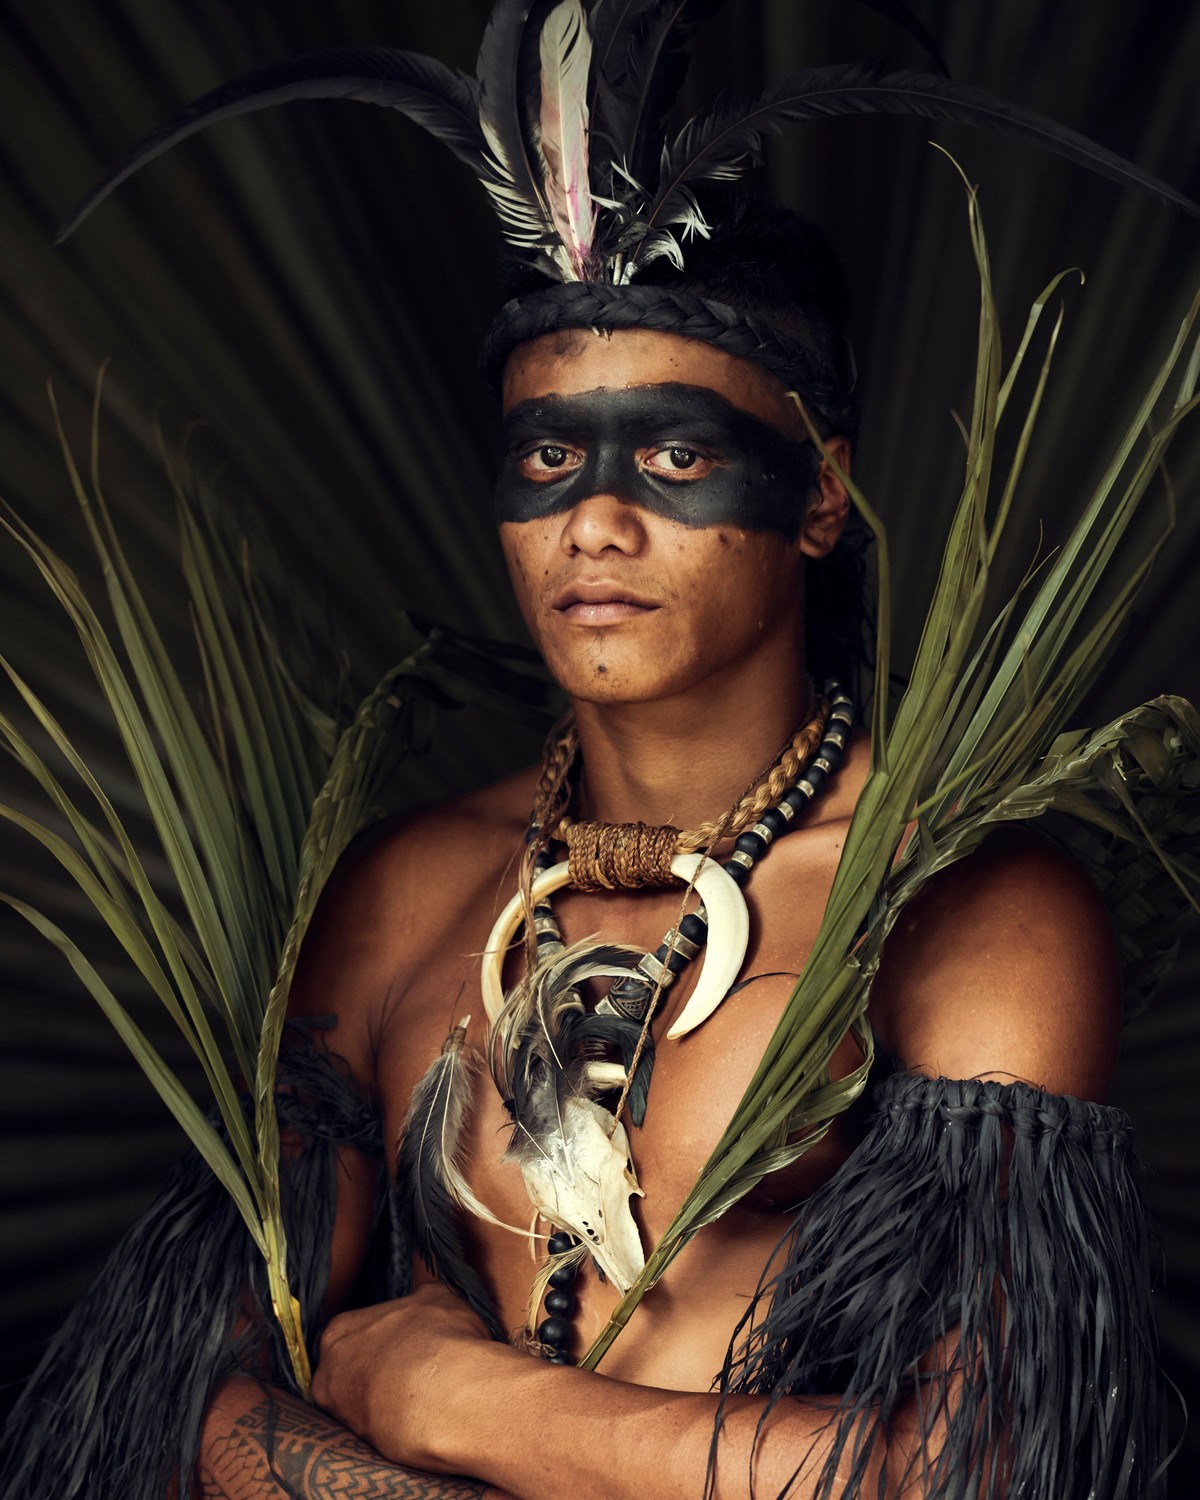 Фотографии представителей разных исчезающих народов планеты коренные народы,страноведение,этнография